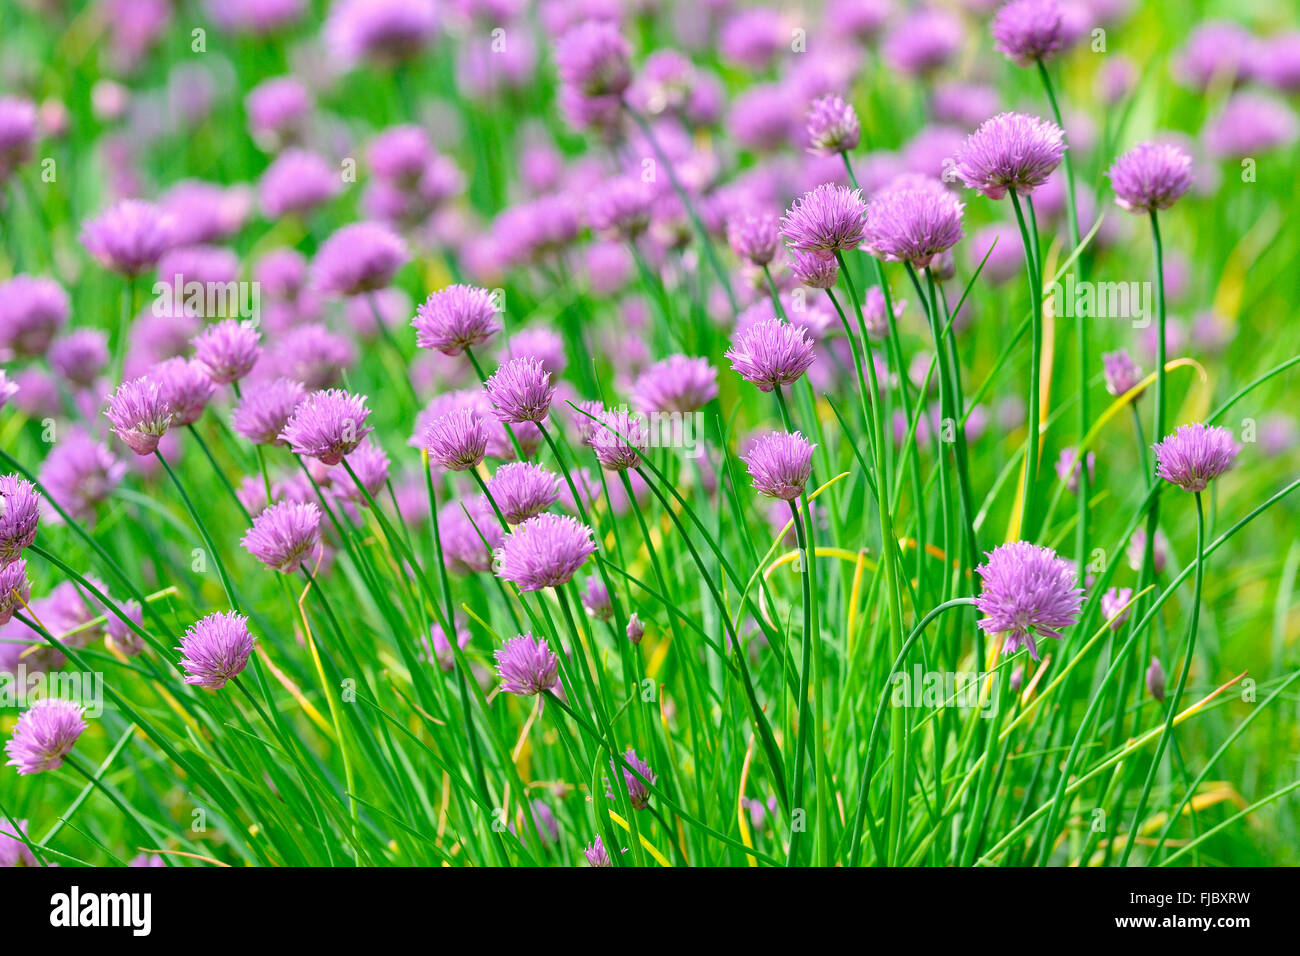 Blühender Schnittlauch (Allium Schoenoprasum), North Rhine-Westphalia,  Germany Stockfotografie - Alamy